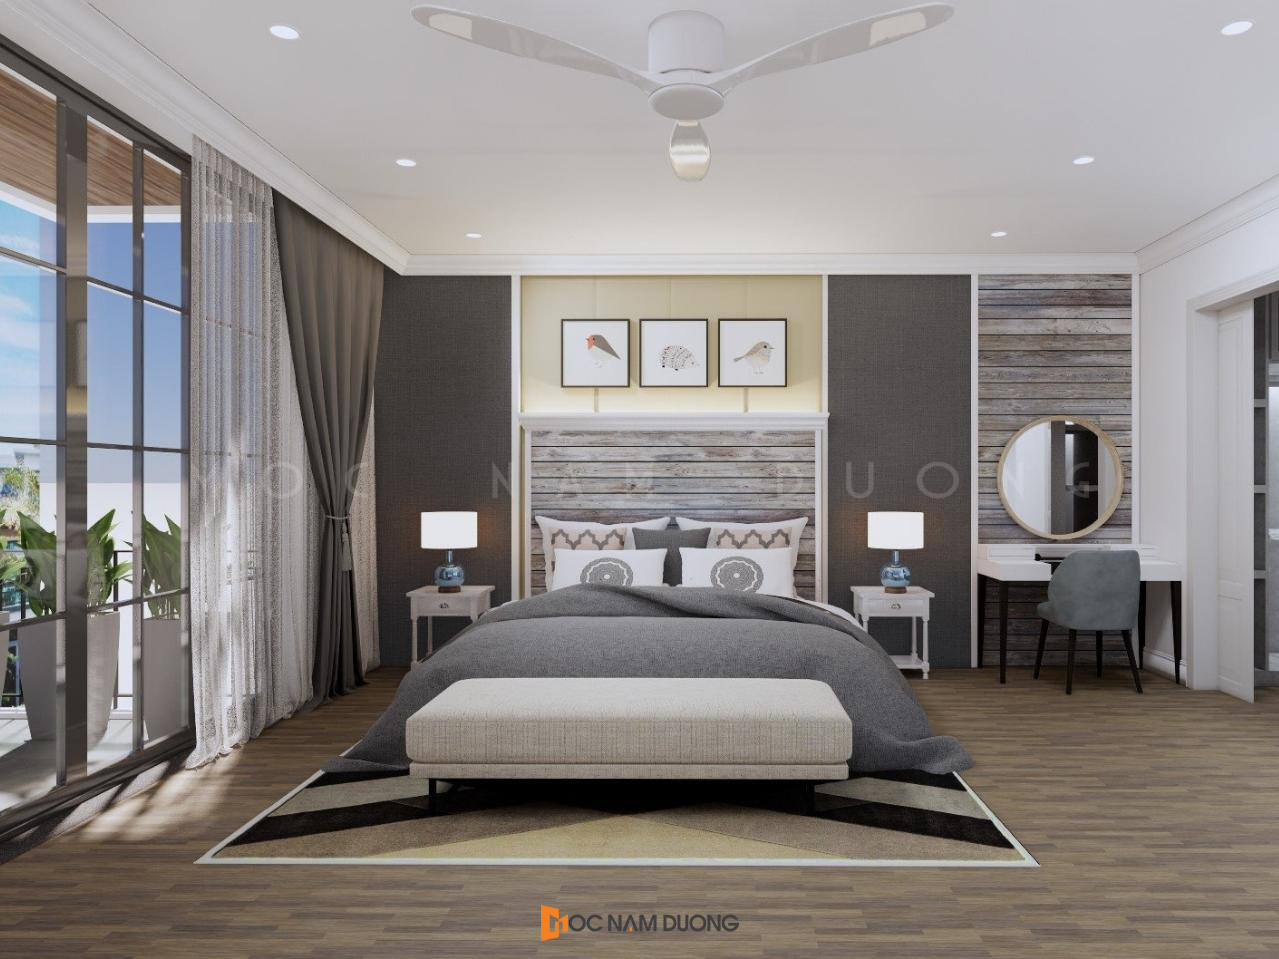 Phòng ngủ đẹp với tone màu trầm, thiết kế phong cách hiện đại ấn tượng